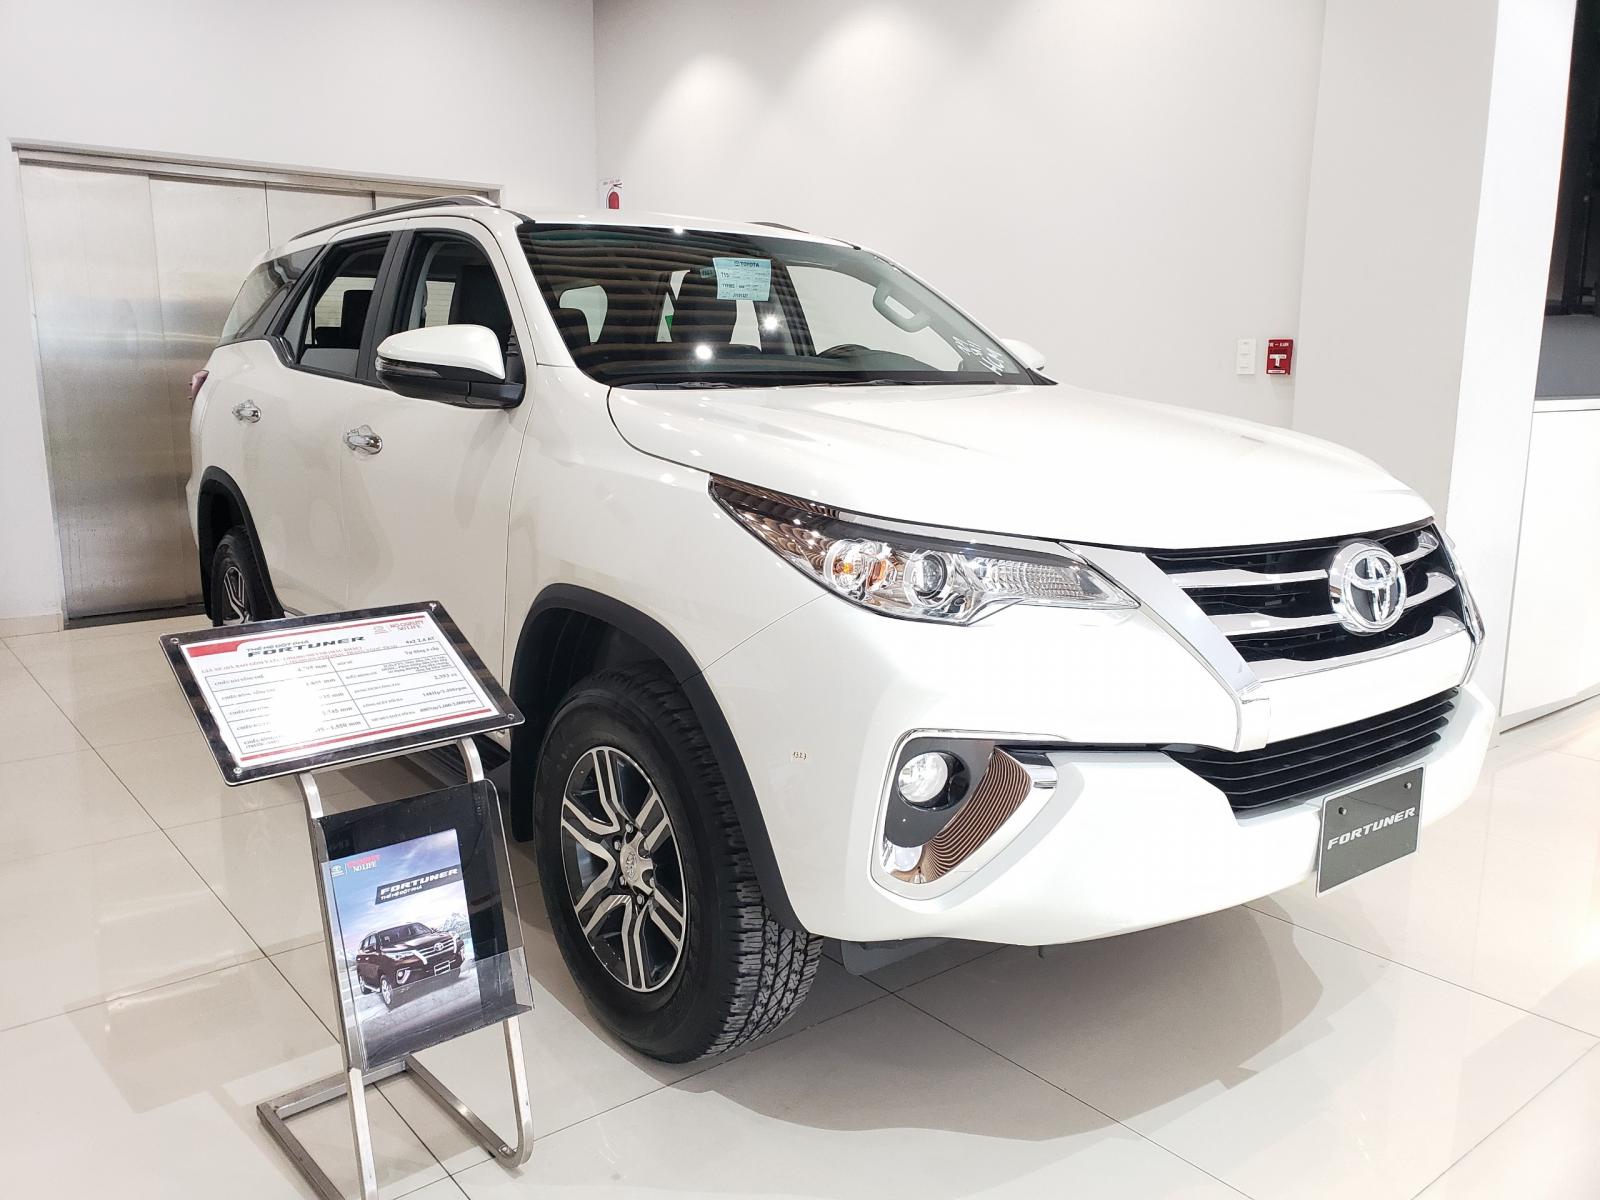 Toyota Fortuner 2020 - Toyota Tây Ninh bán Fortuner 2.4G 2020 giảm ngay 50Tr giá chỉ còn 983Tr - trả góp LS 0.5%/tháng - LH 0938.49.86.89